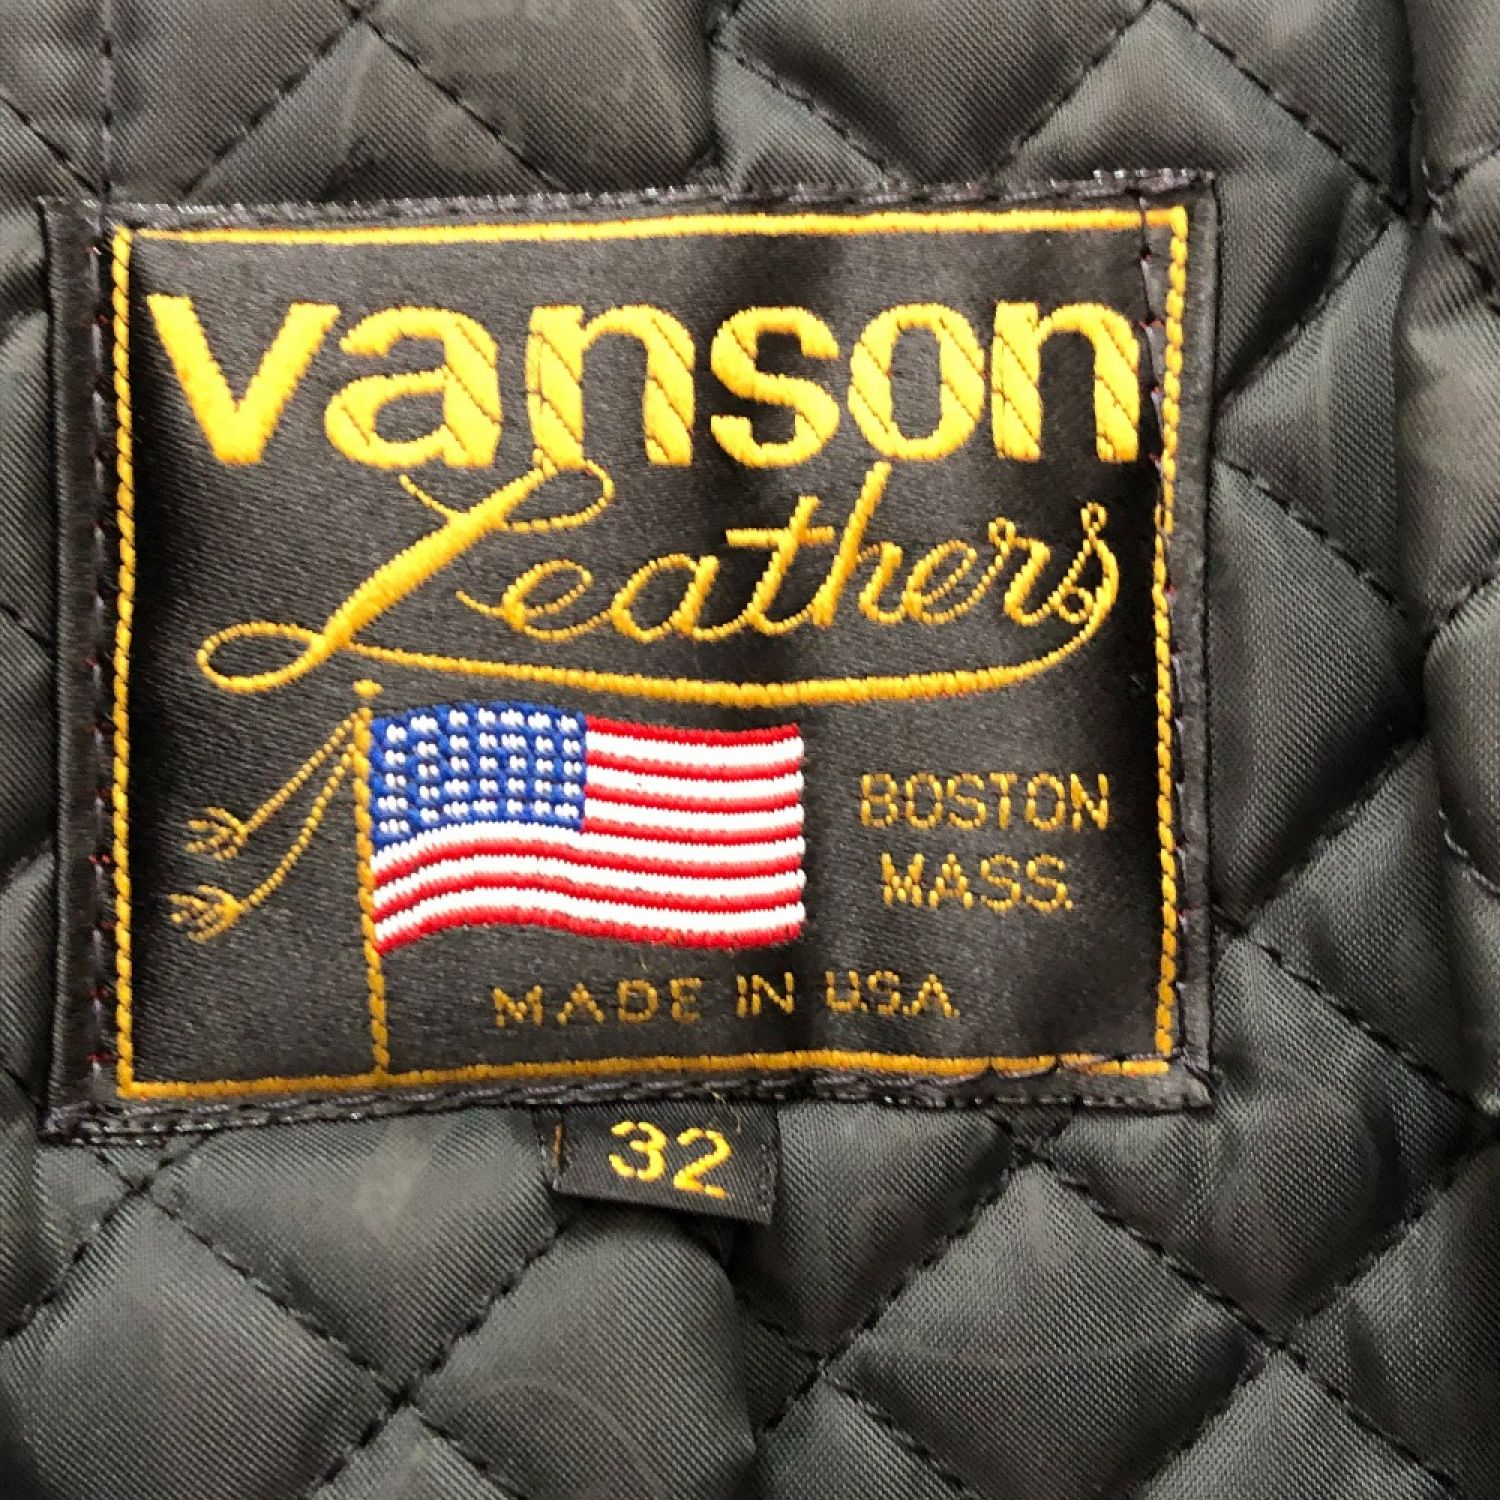 □□VANSON バンソン メンズ衣料 ジャケット　サイズ32 ブラック